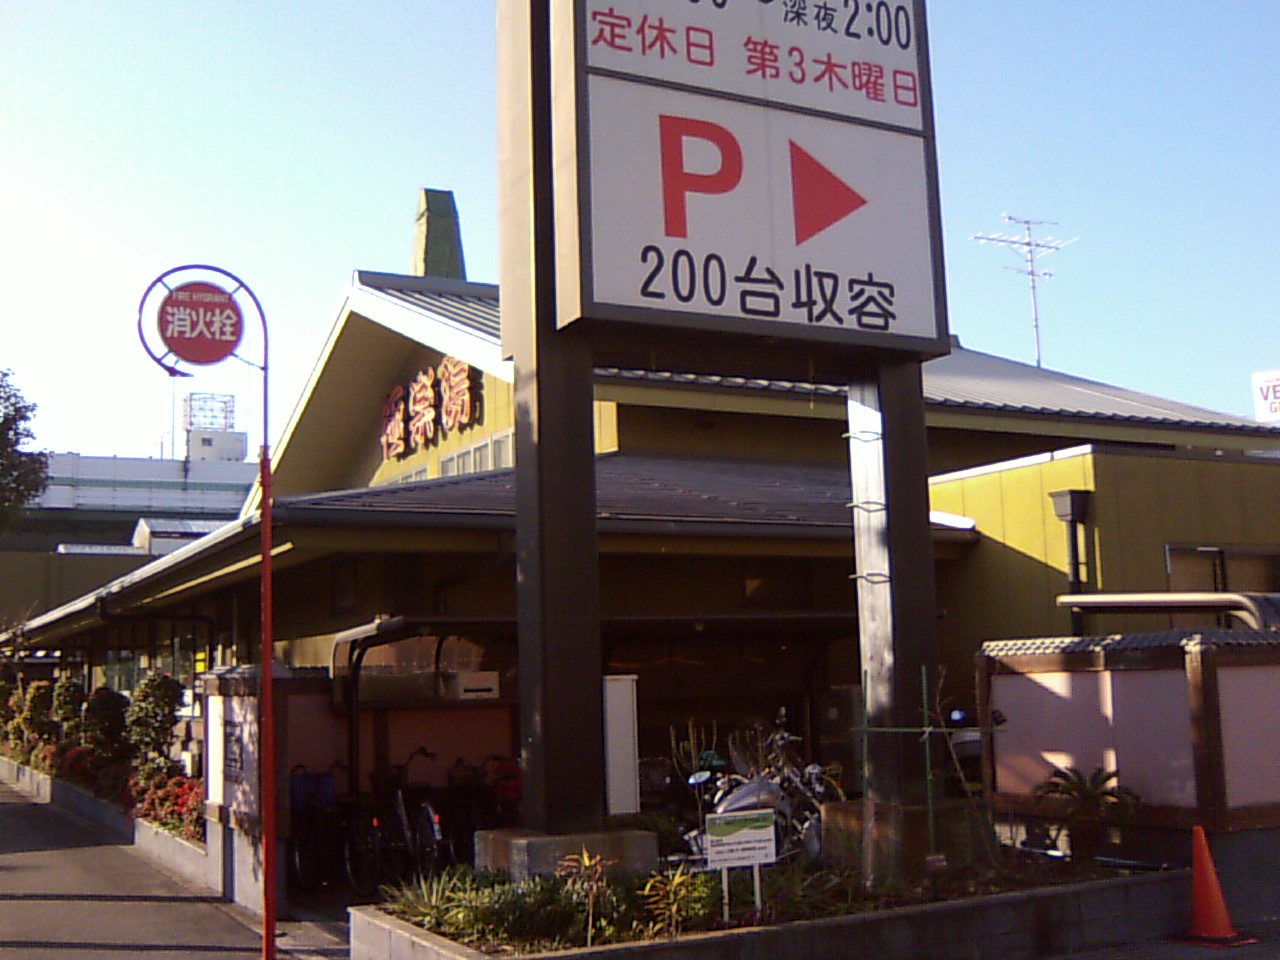 極楽湯 東大阪店